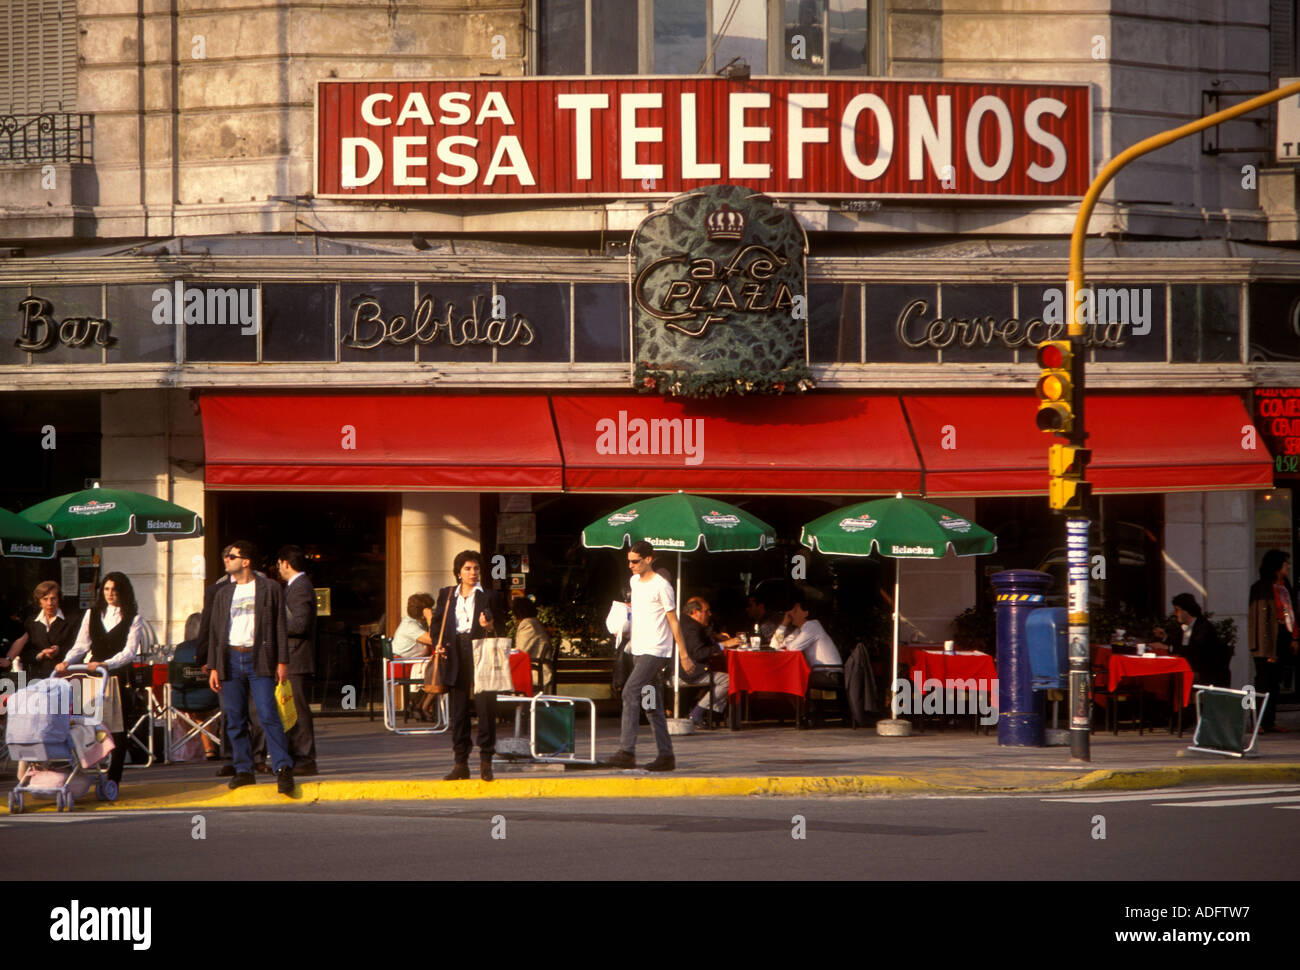 Casa Desa Telefonos ristorante, Plaza de la Republica, Avenue di Luglio 9, Calle Lavalle, Buenos Aires, Provincia di Buenos Aires, Argentina, Sud America Foto Stock